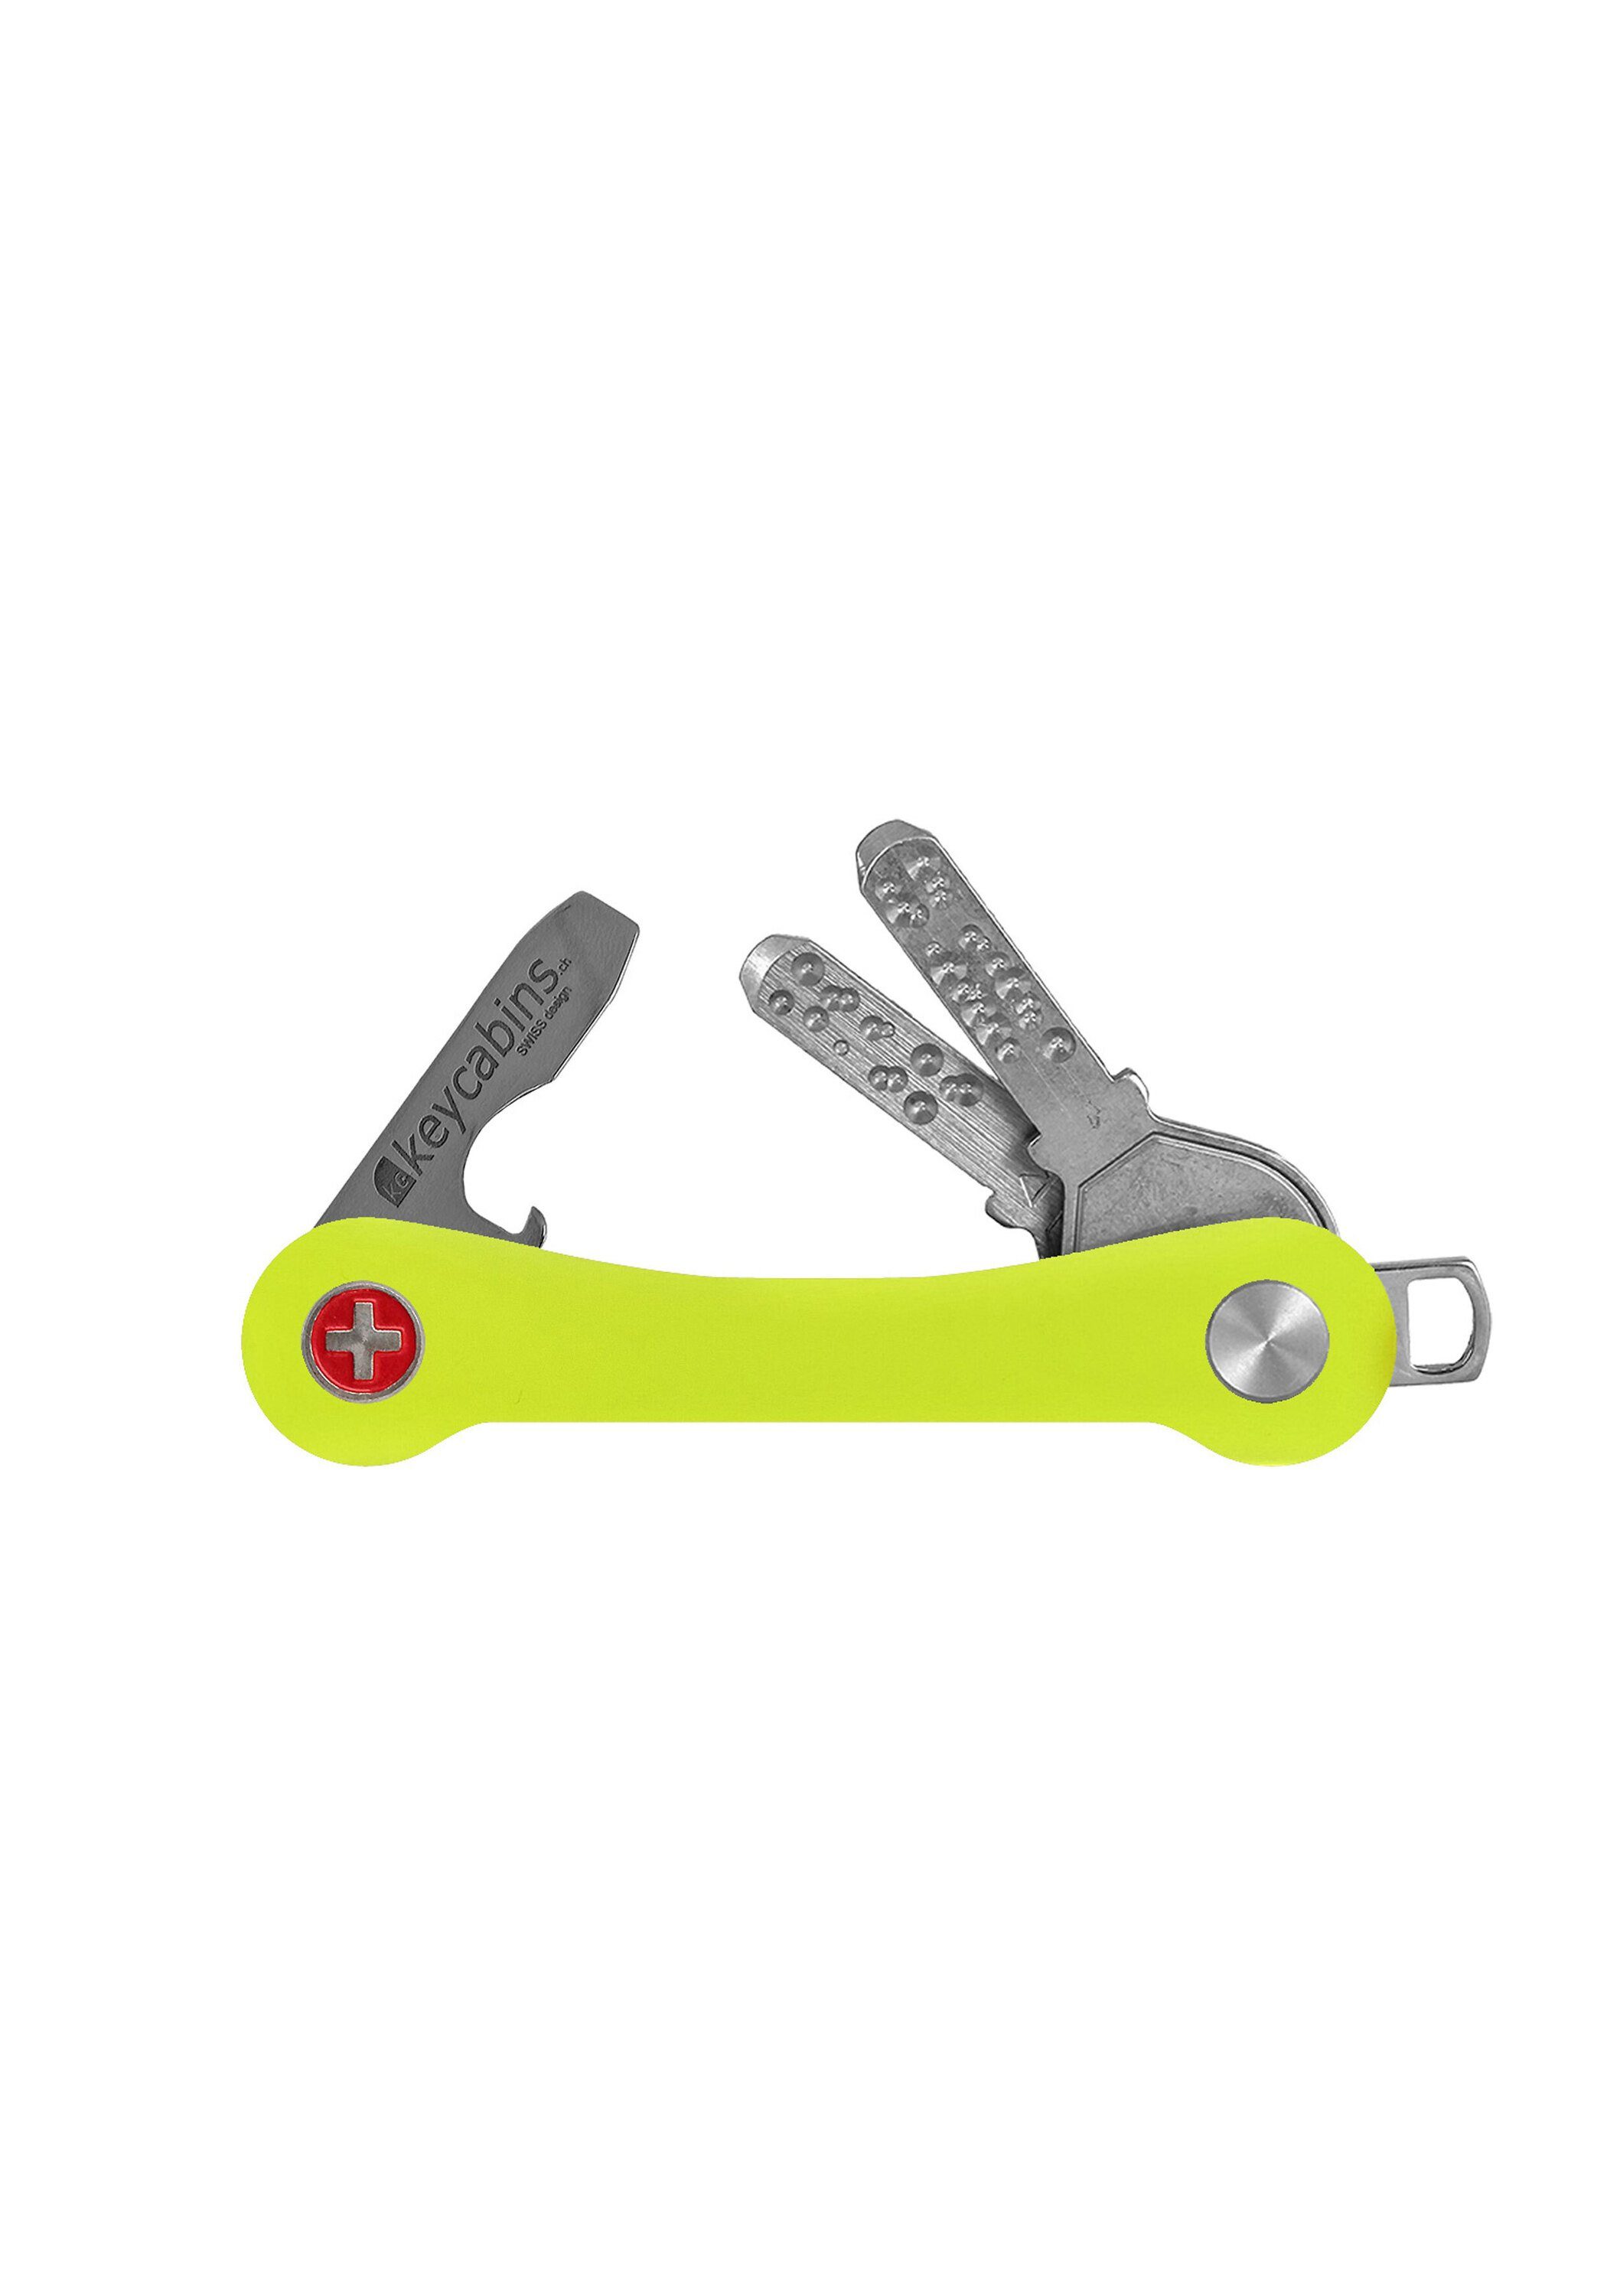 keycabins Schlüsselanhänger Snowboard-Ski S1, neon yellow SWISS made